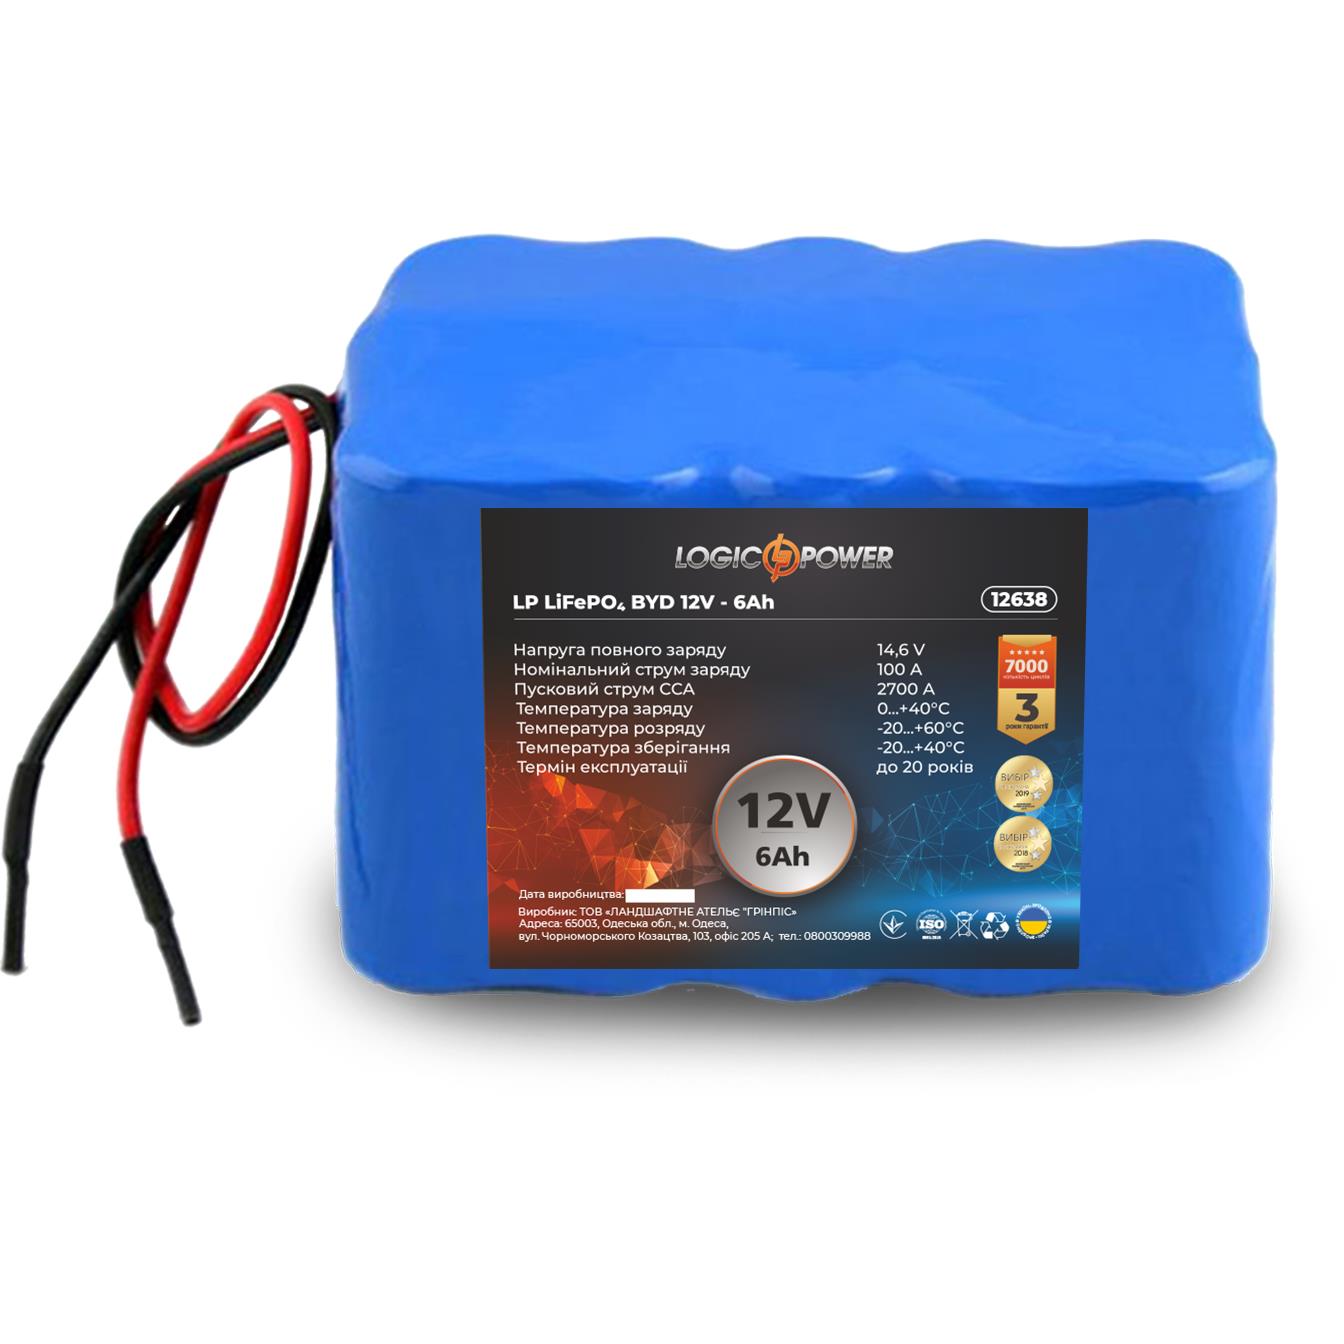 Аккумулятор литий-железо-фосфатный LogicPower LP LiFePO4 12V - 6 Ah для мопеда (12638) в интернет-магазине, главное фото